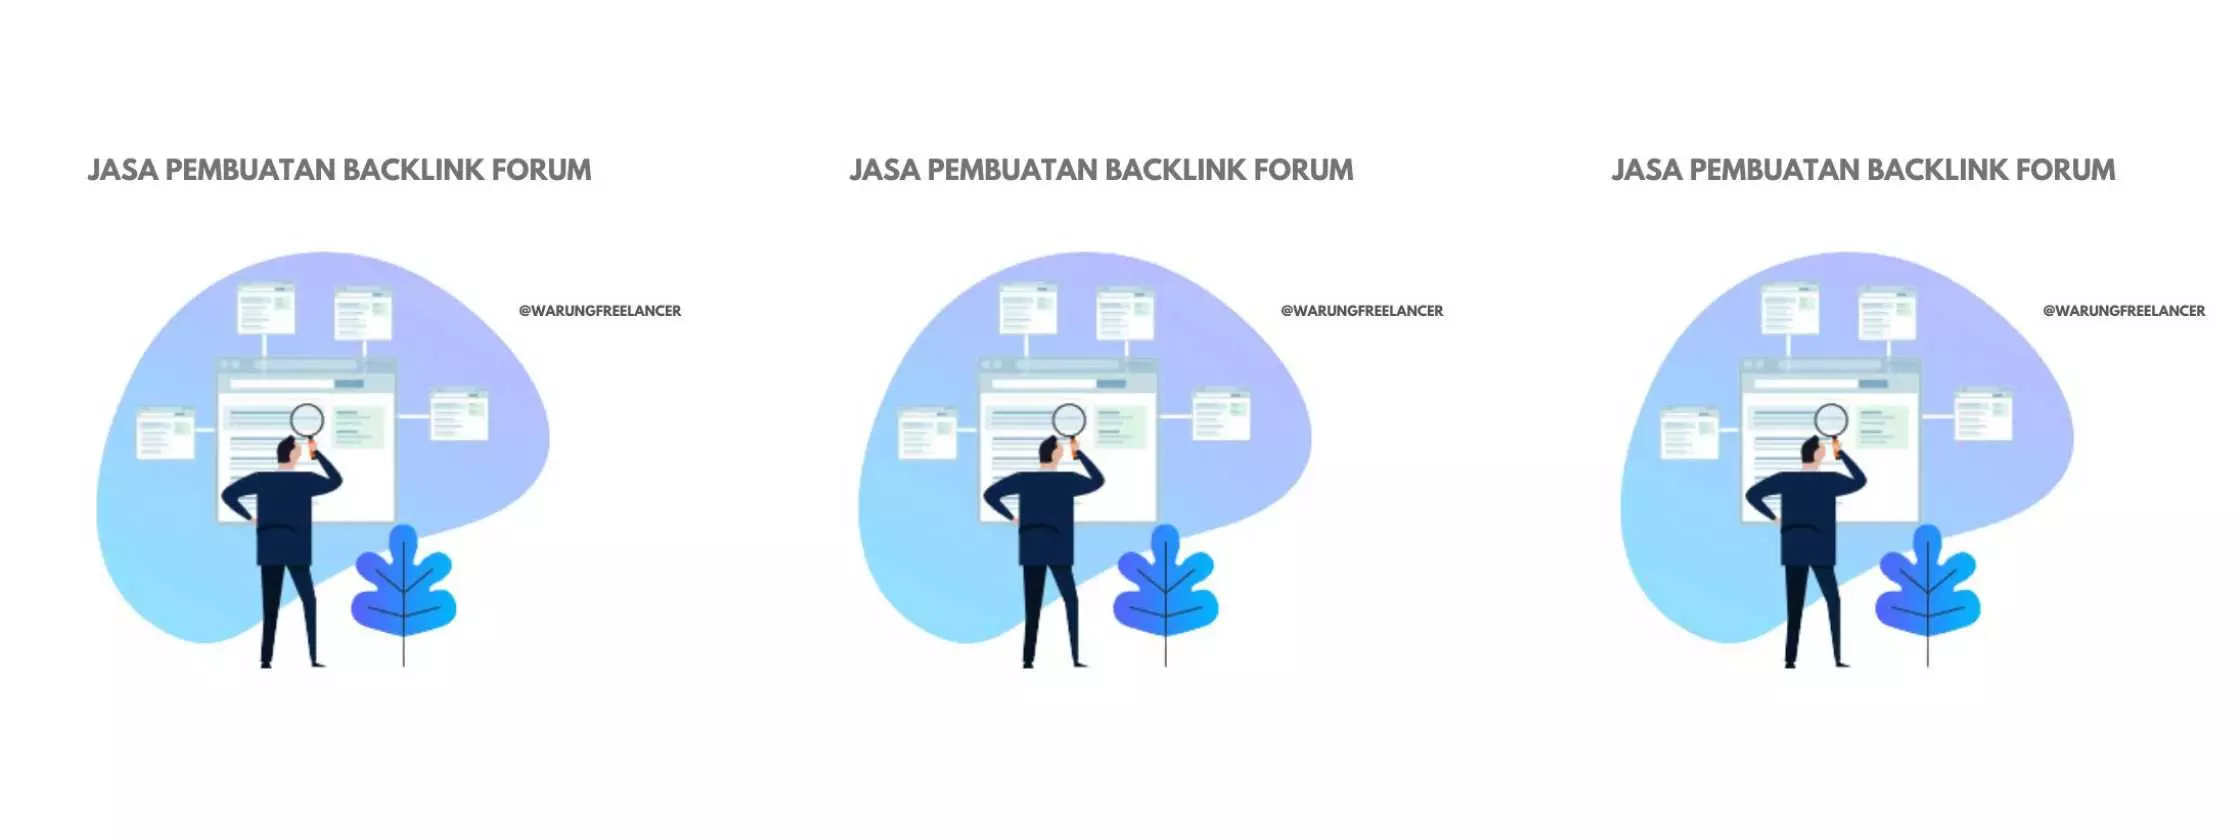 Jasa Pembuatan Backlink Forum